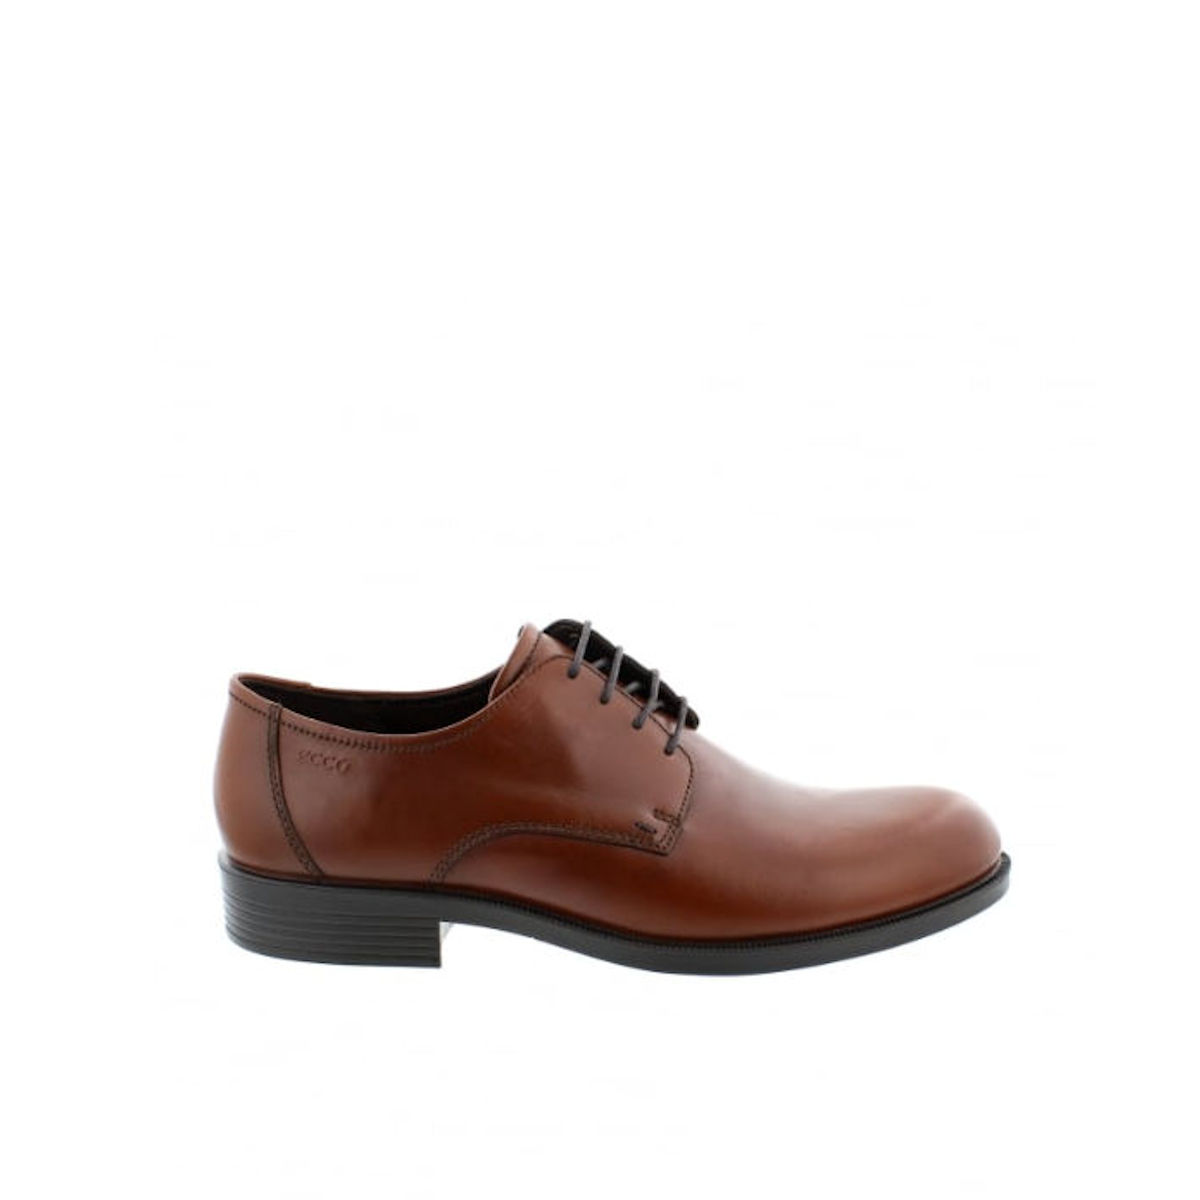 ECCO Harold - Mens Cognac Brown Leather Derby Shoe